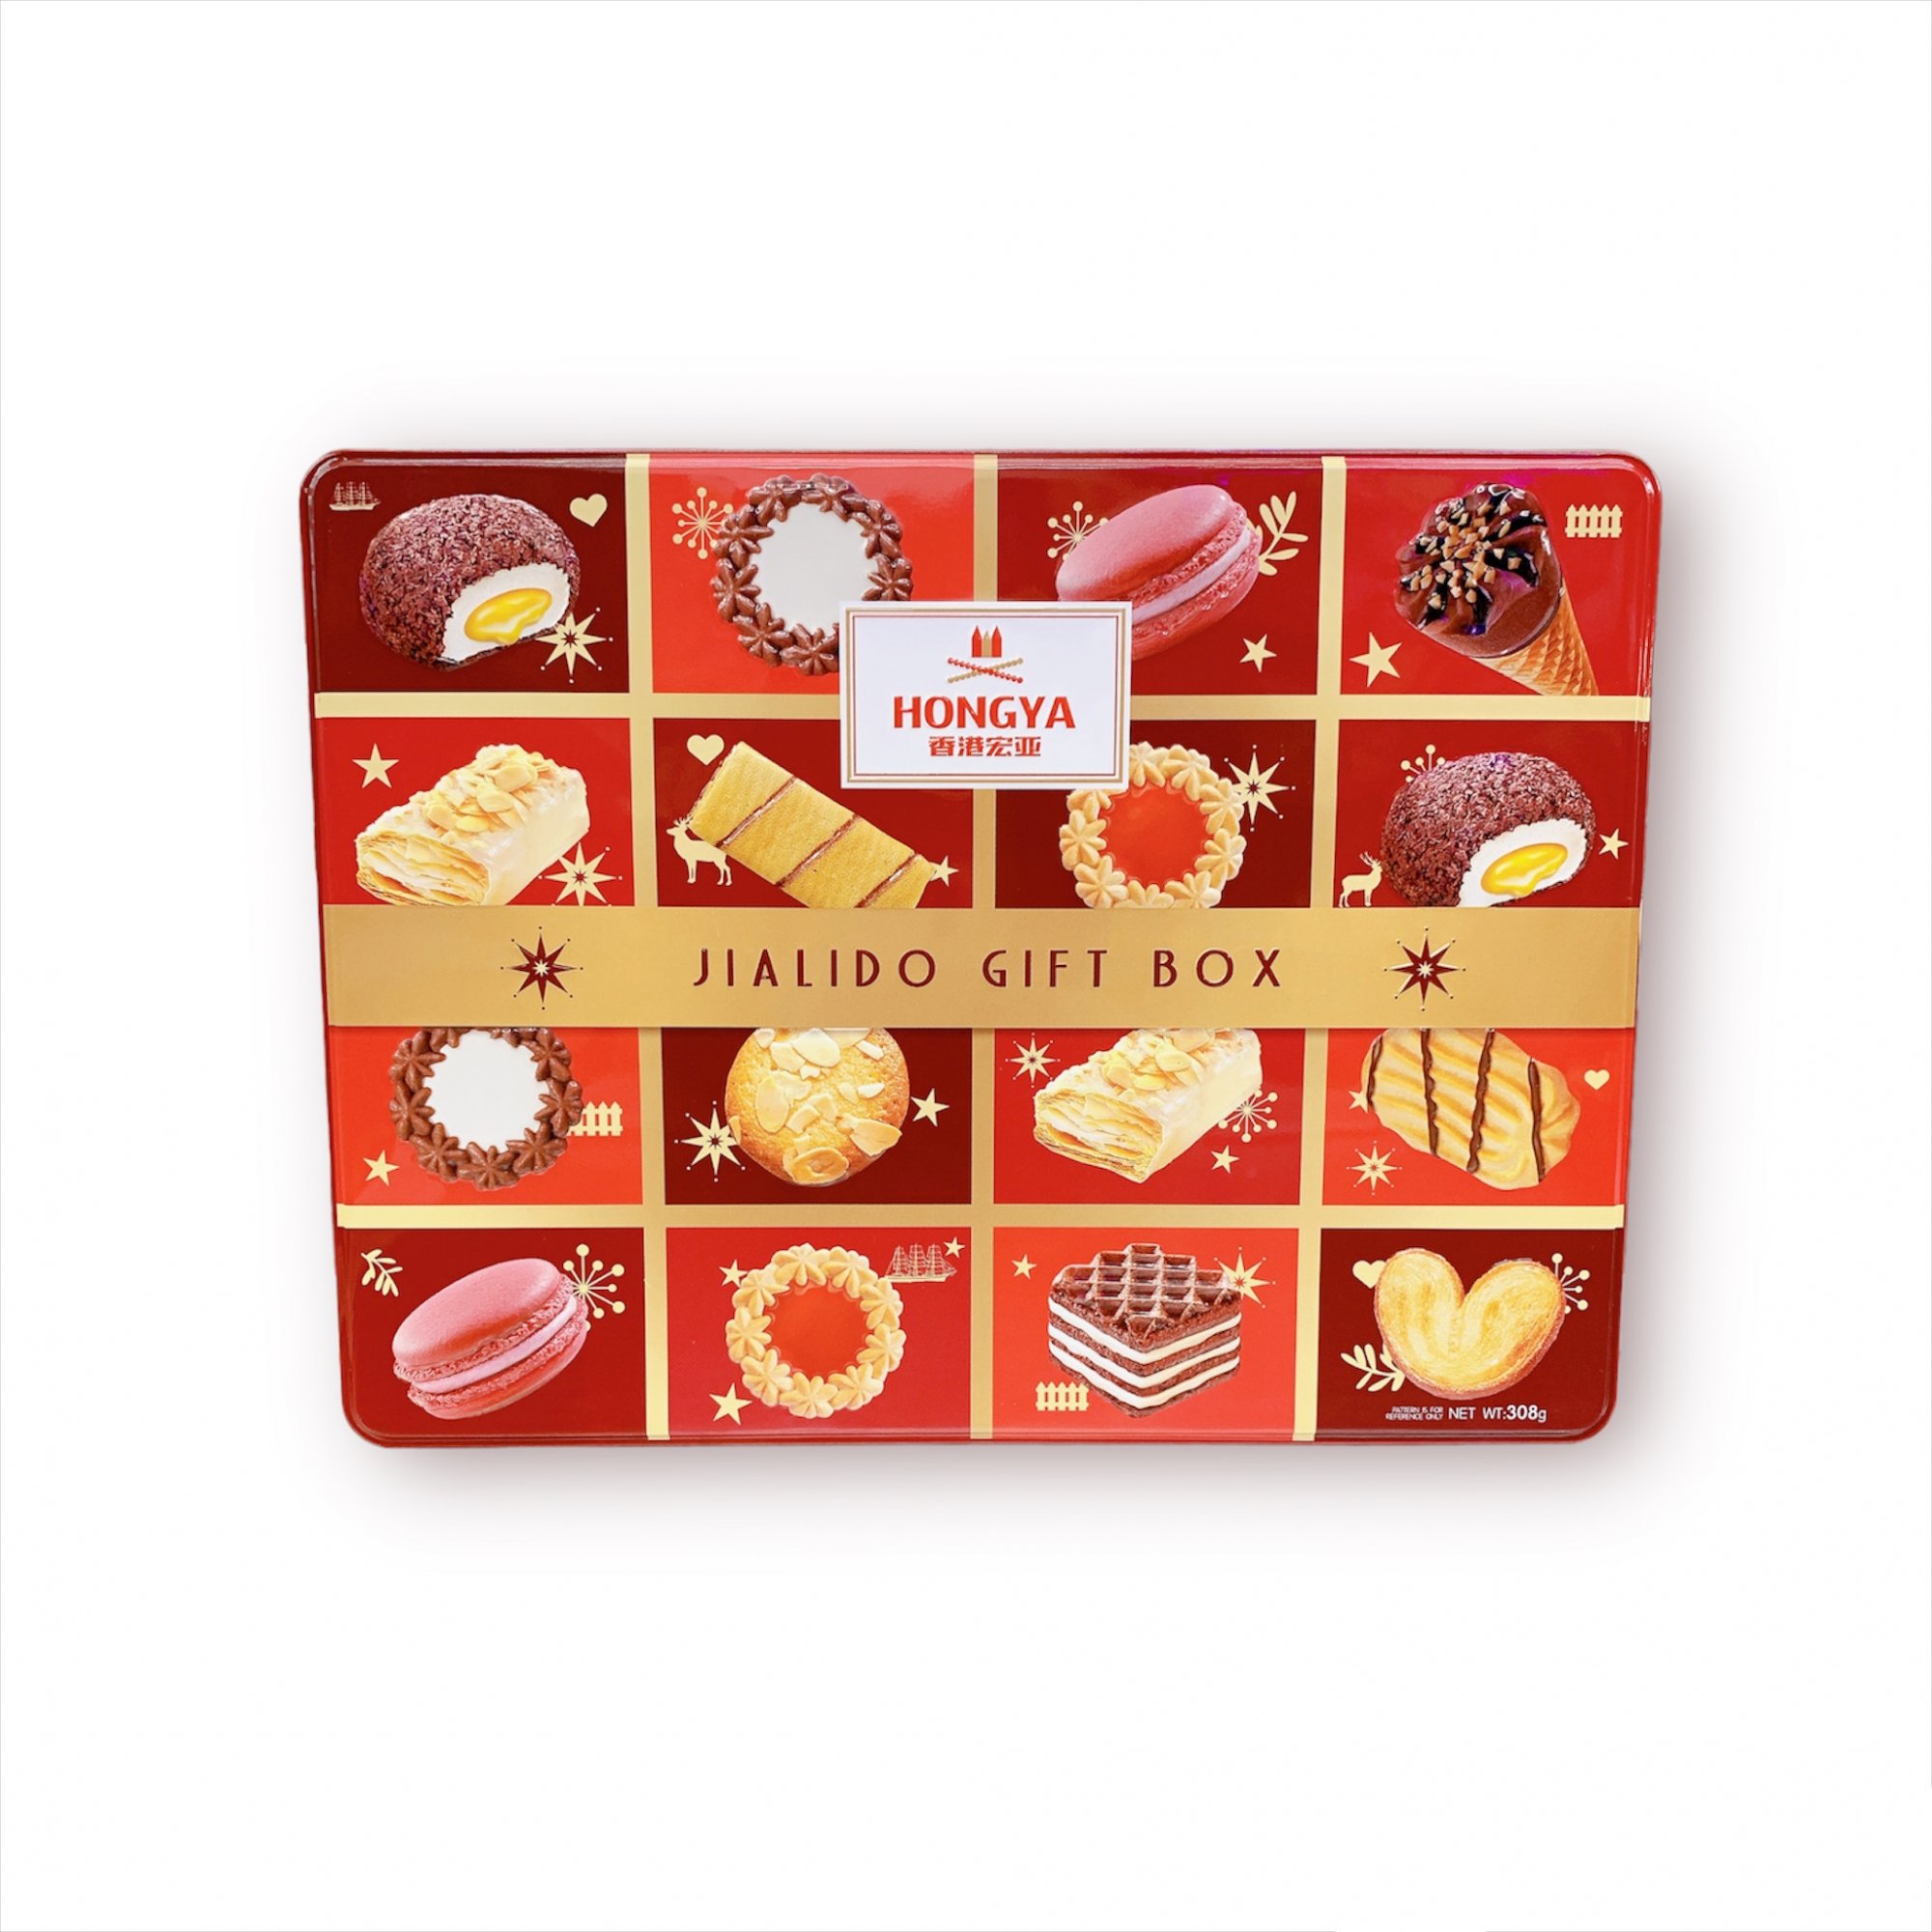 Bánh Quy Hộp Thiết Hongya Jialido Gift Box 308g